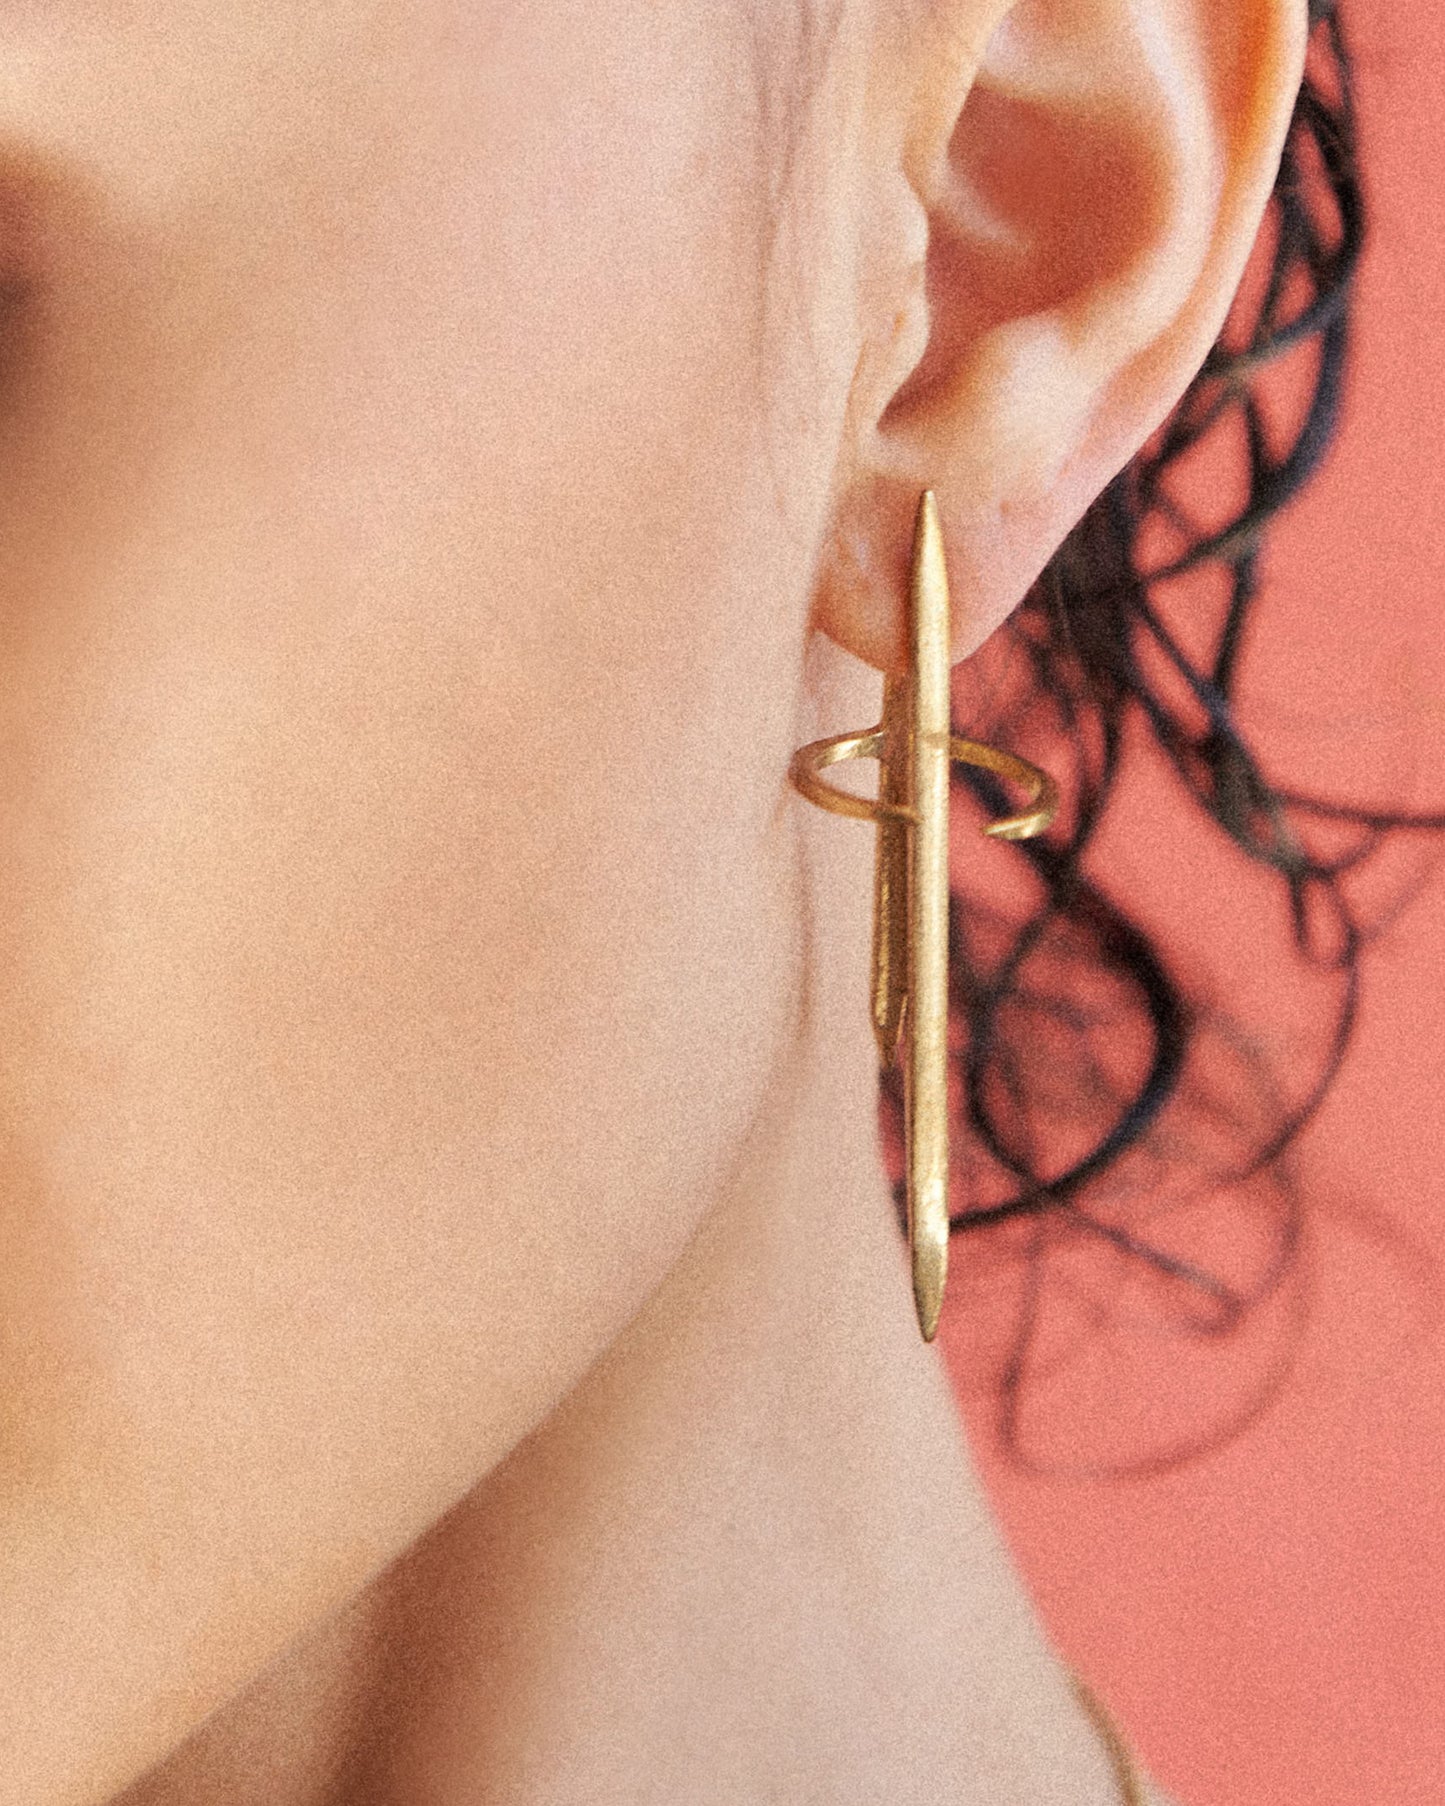 Delta Earrings Gold